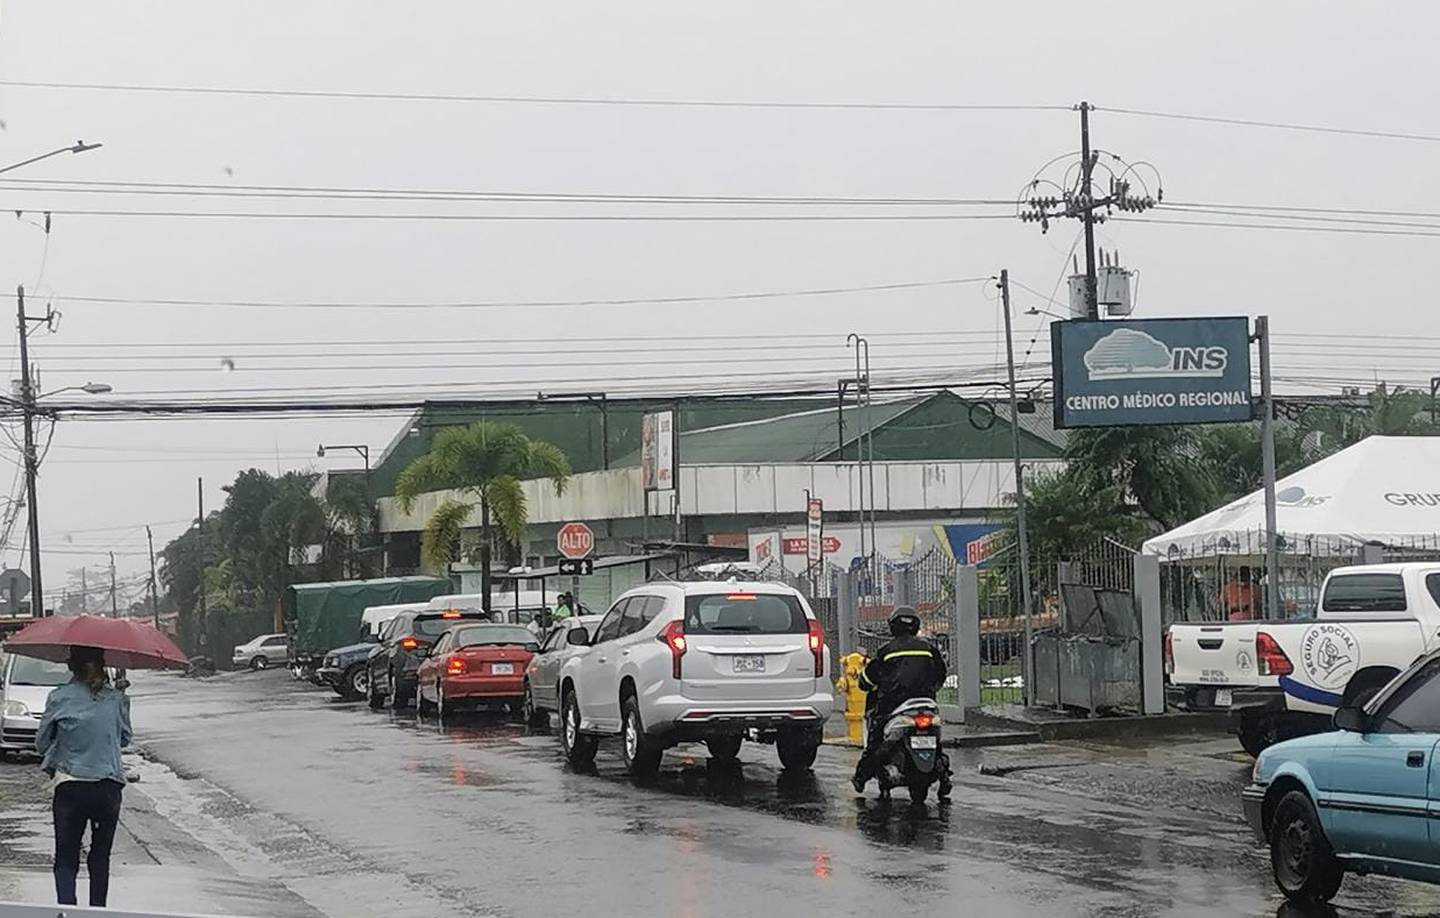 Las lluvias moderadas e intermitentes prevalecían la mañana de este miércoles en el centro de Guápiles . Foto: Reiner Montero.